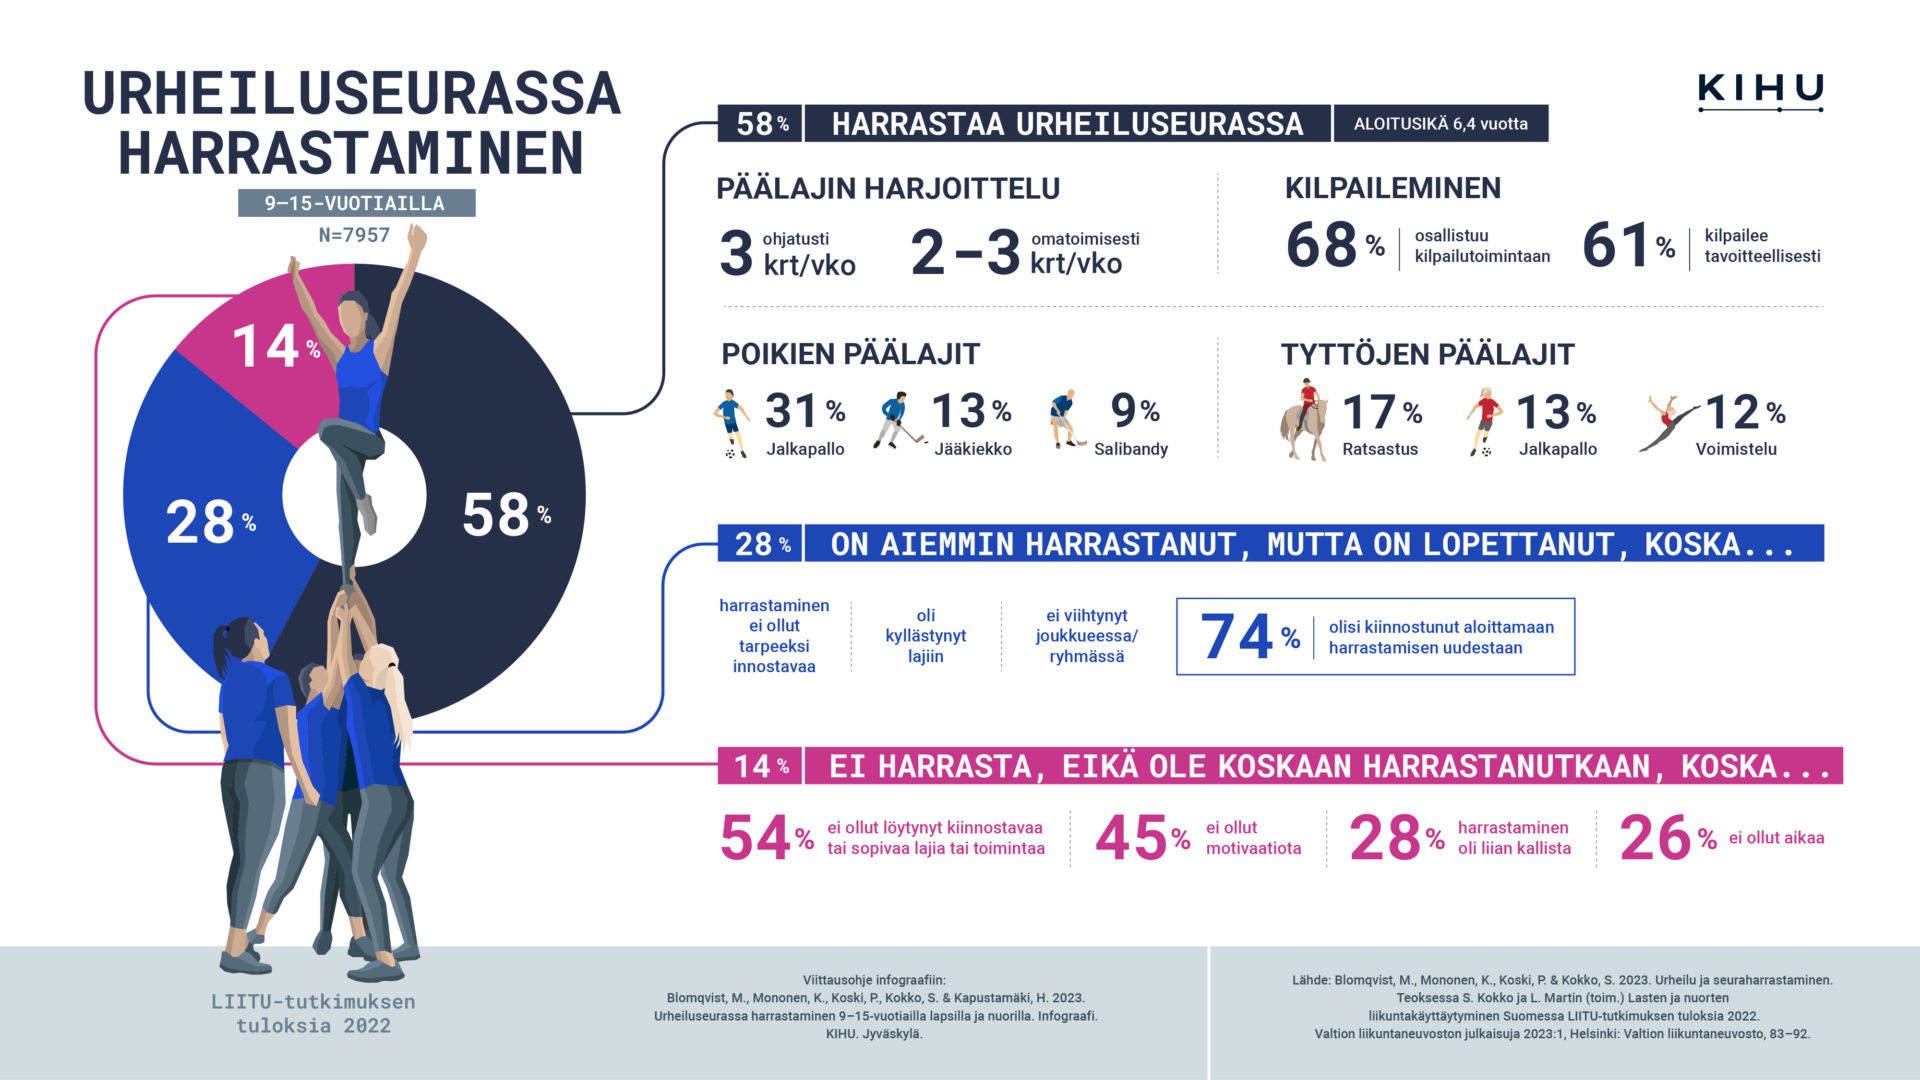 Infograafi vuoden 2022 LIITU-tutkimuksen tuloksista urheiluseurassa harrastamisen osalta.